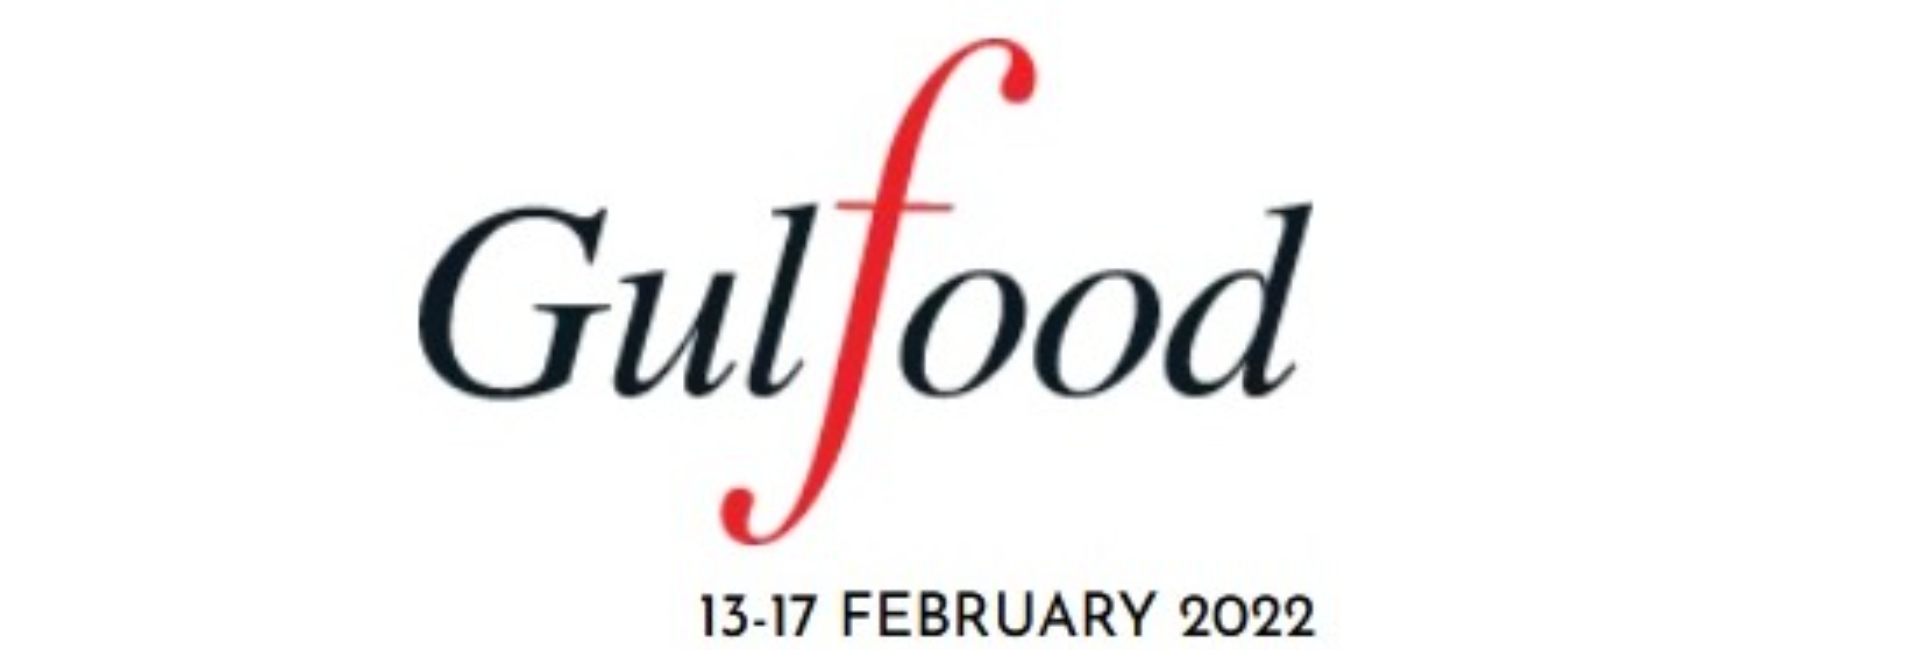 2022 Gulfood波灣國際食品展參展廠商名單